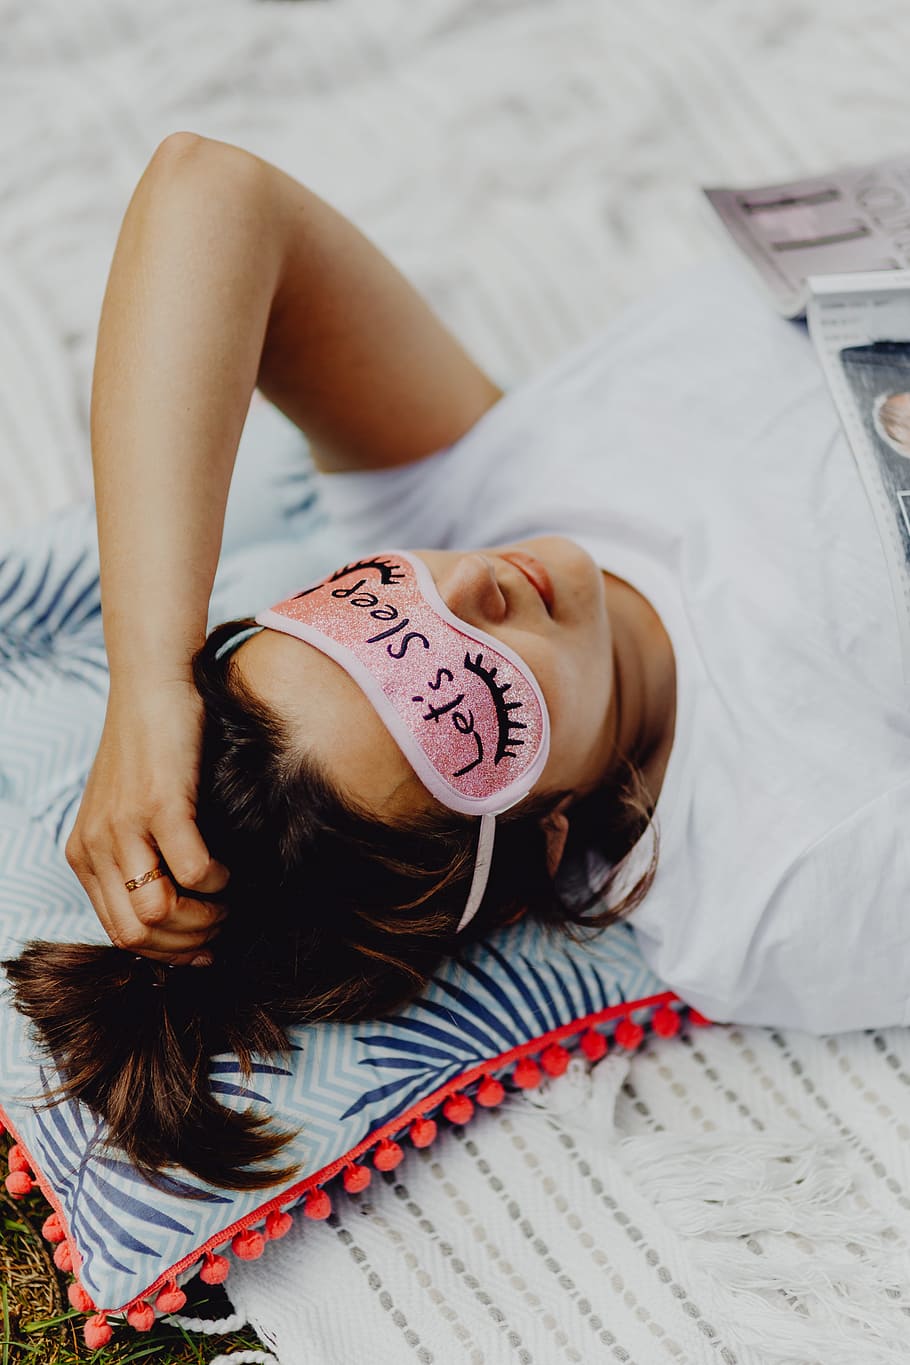 Joyful girl relaxing in bedroom - top view of brunette women in pink sleeping mask, HD wallpaper